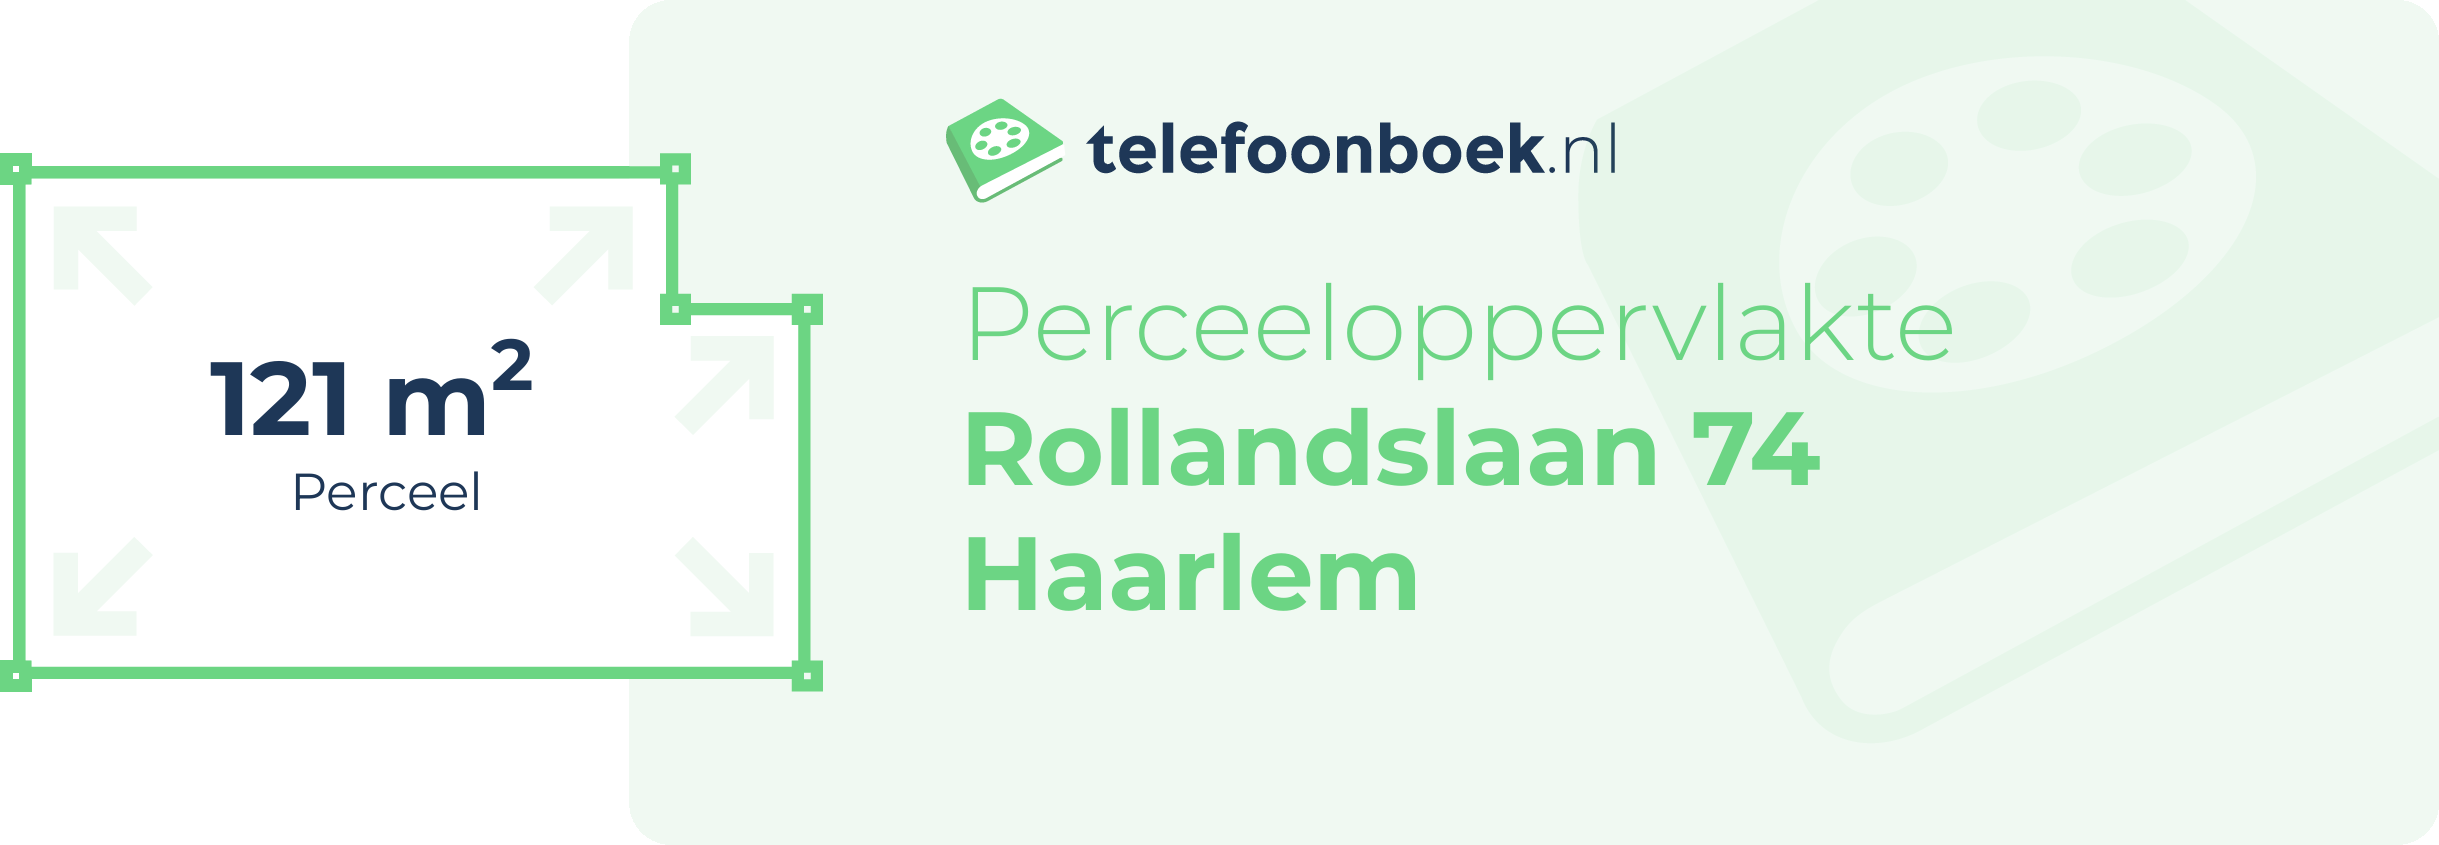 Perceeloppervlakte Rollandslaan 74 Haarlem